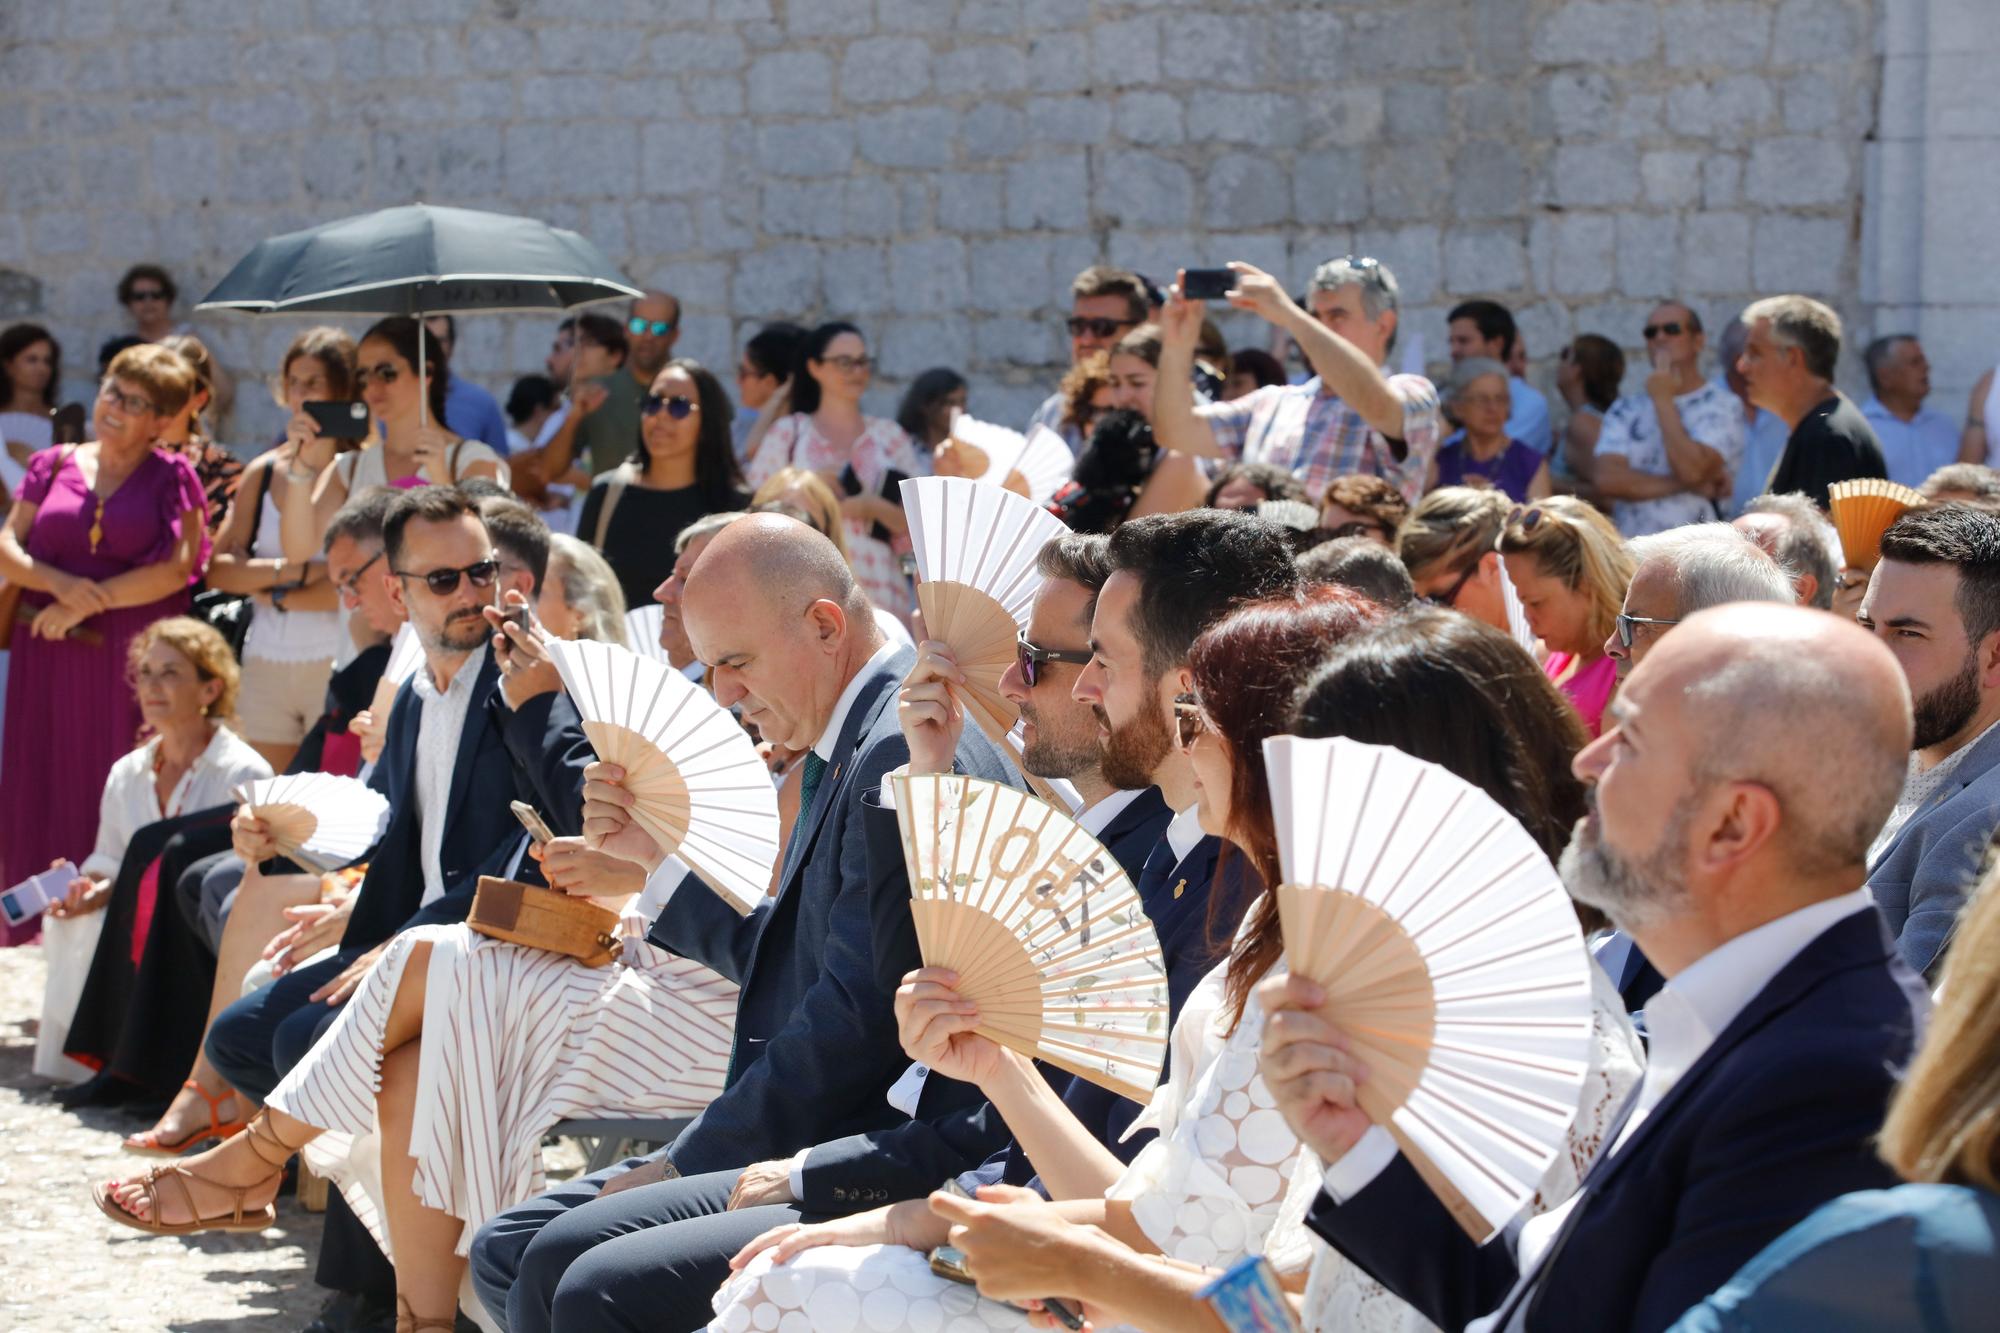 Las imágenes del Día de Sant Ciriac en Ibiza.